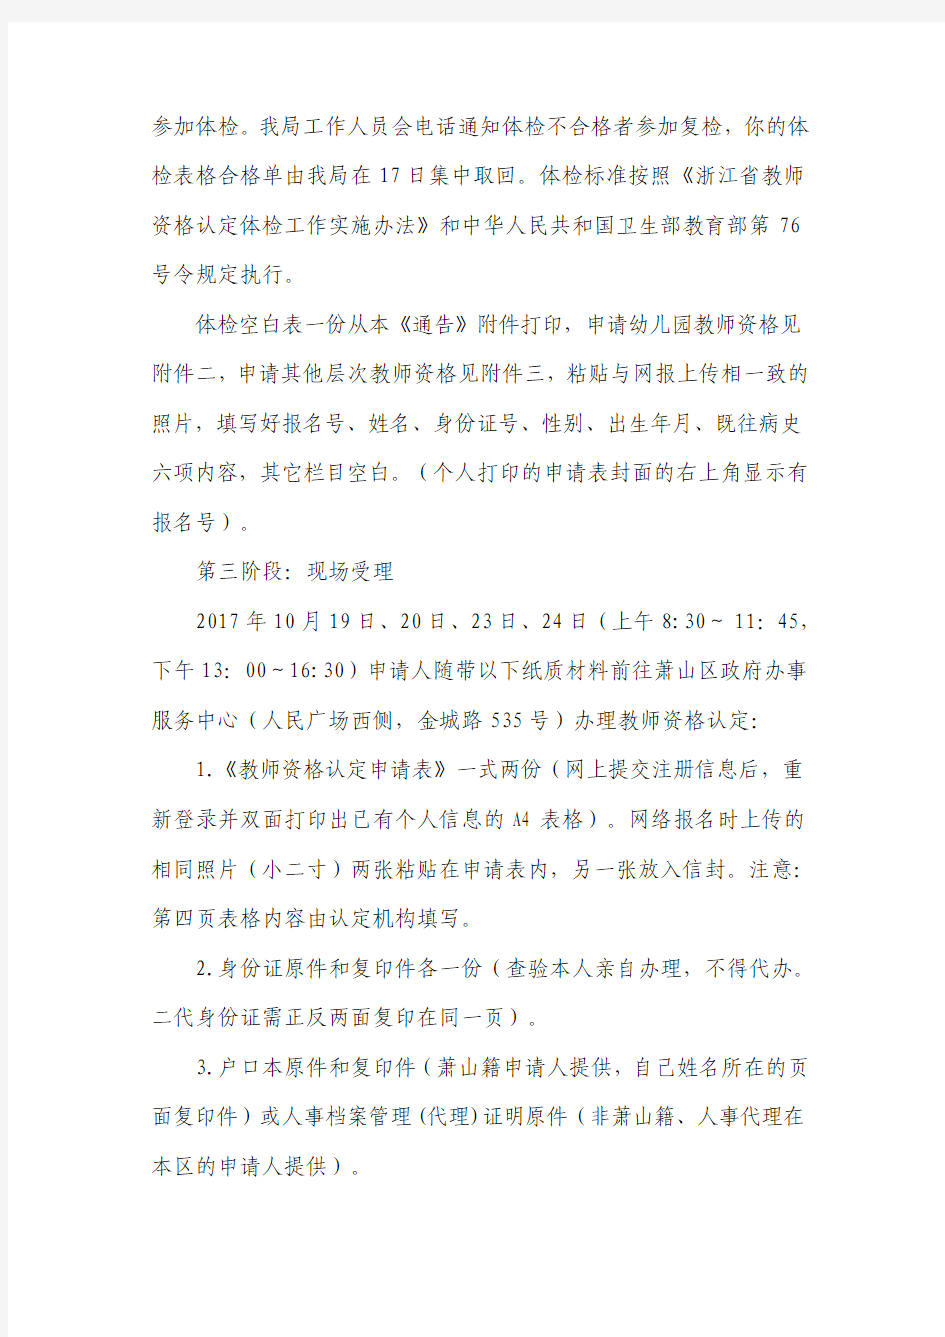 杭州市萧山区教育局2017年下半年教师资格认定注意事项